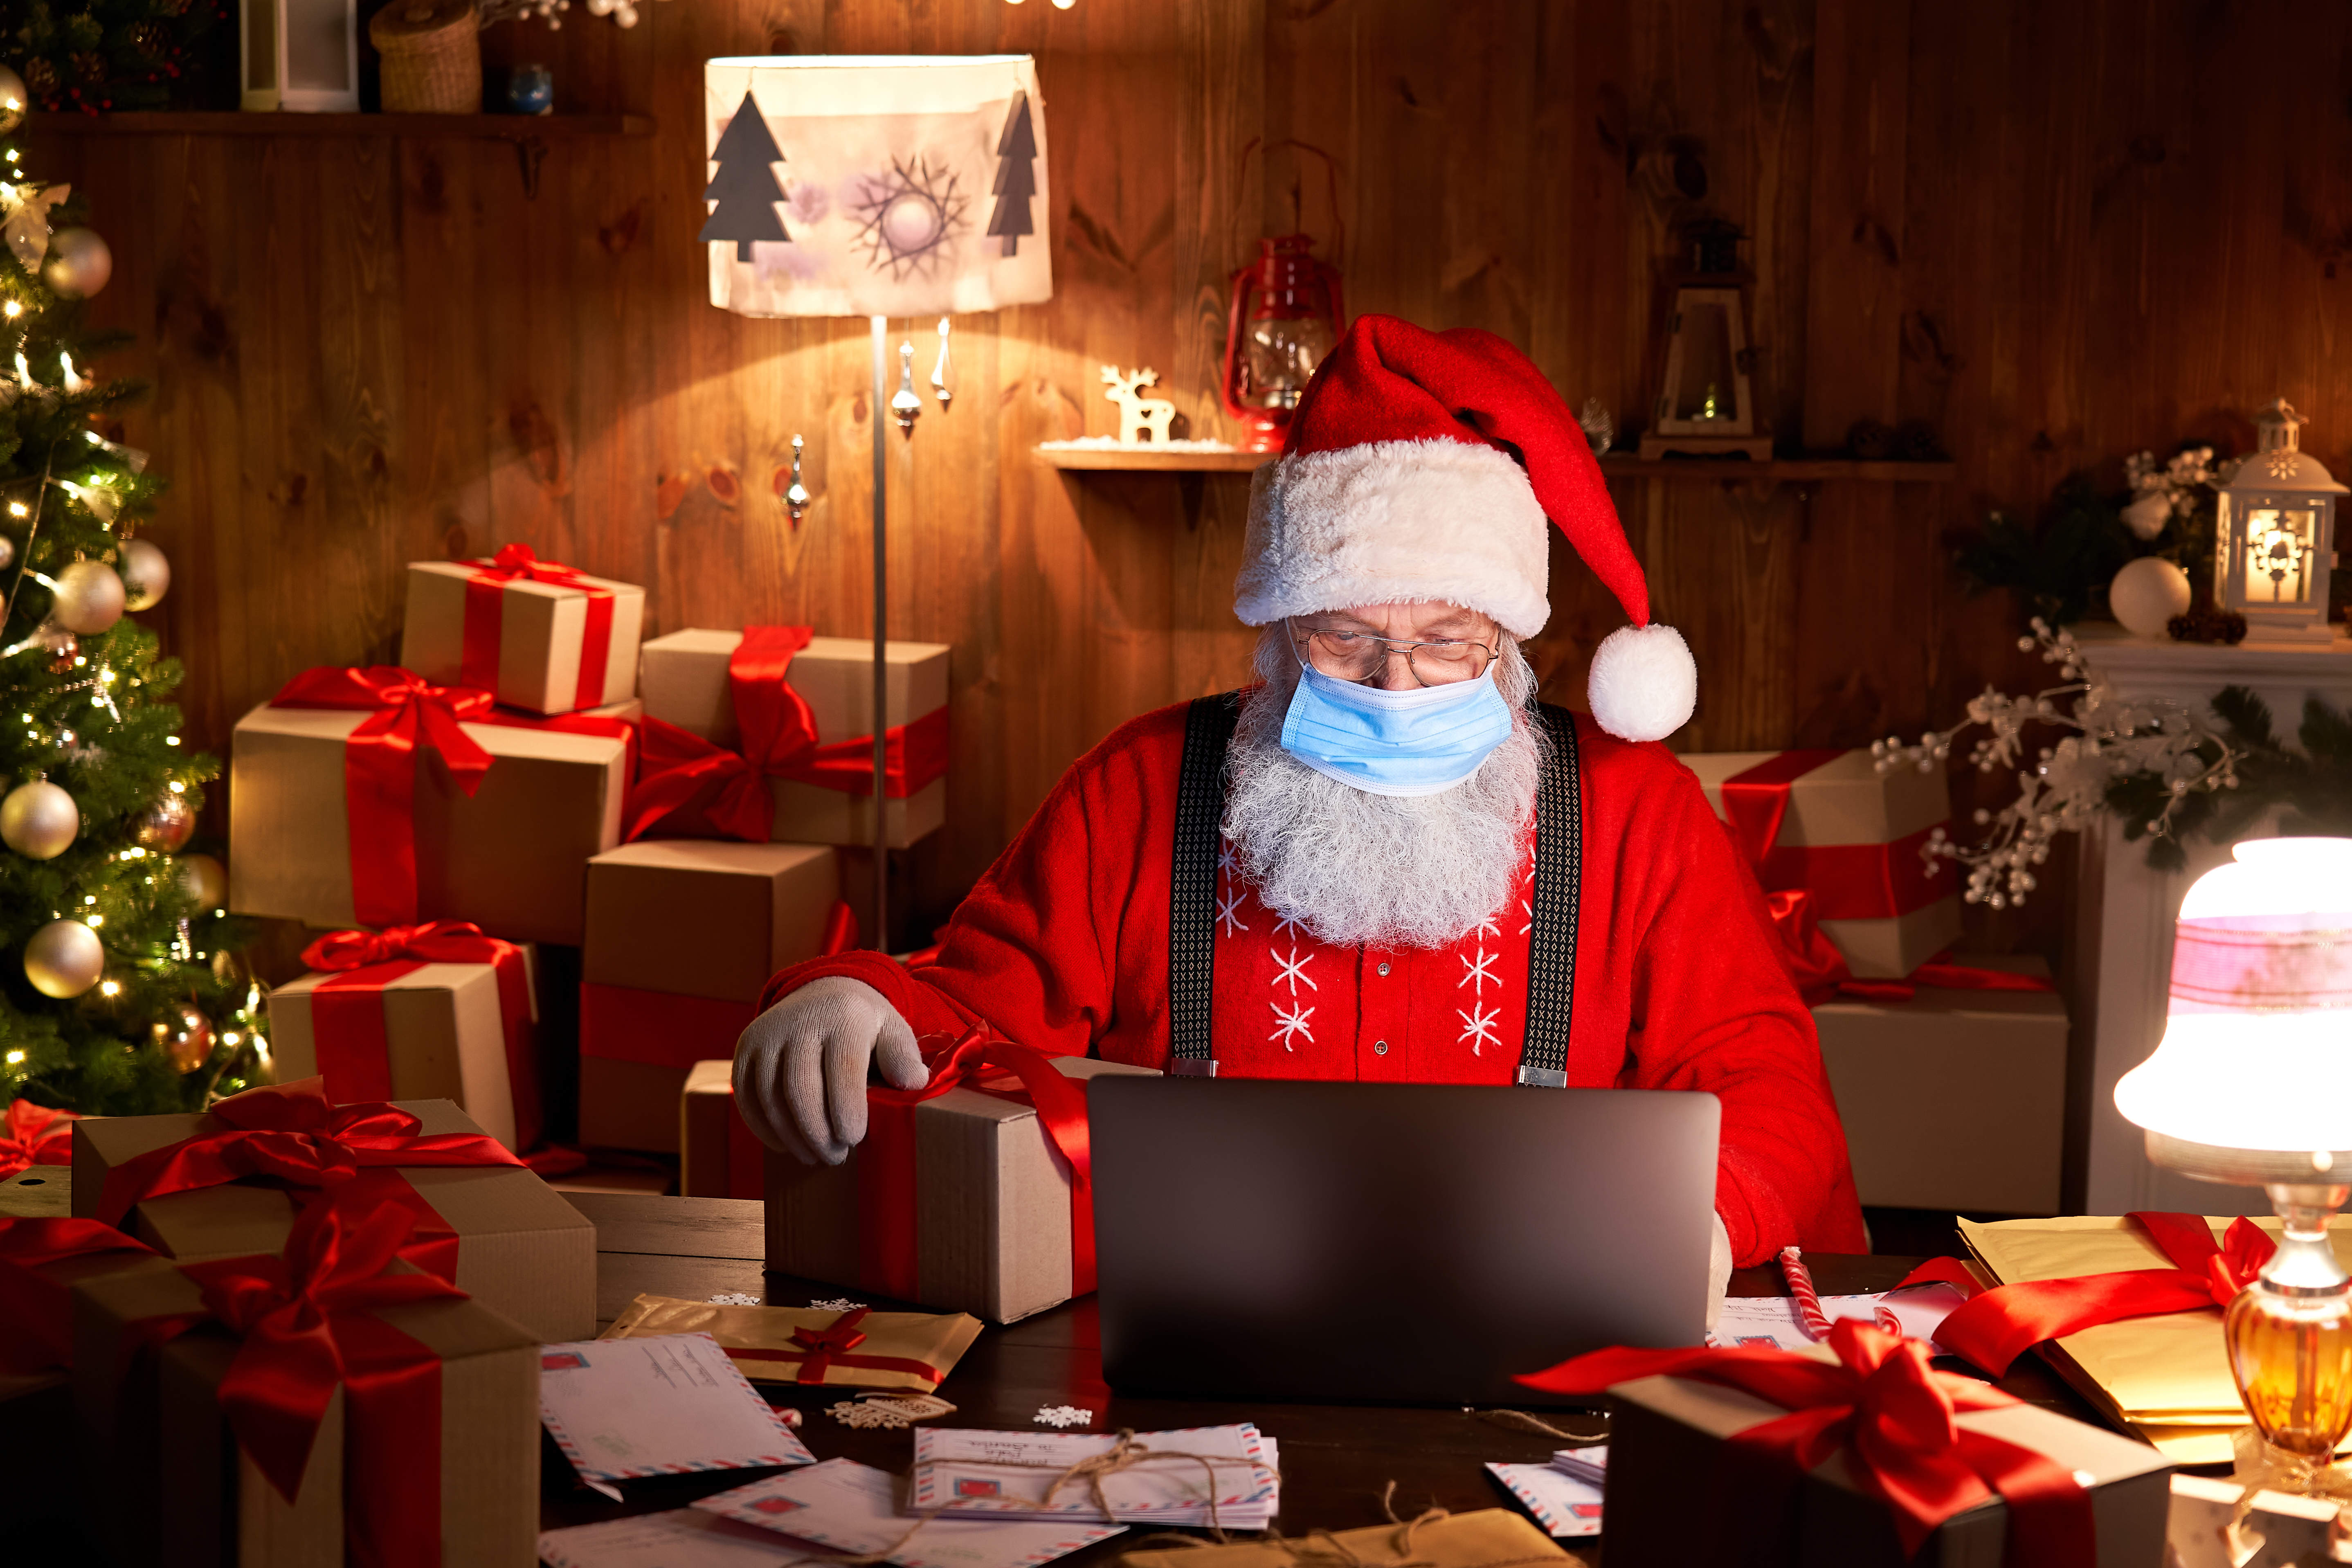 Los expertos señalaron que la Navidad no es un momento para relajar las medidas de prevención frente a la pandemia (Shutterstock)